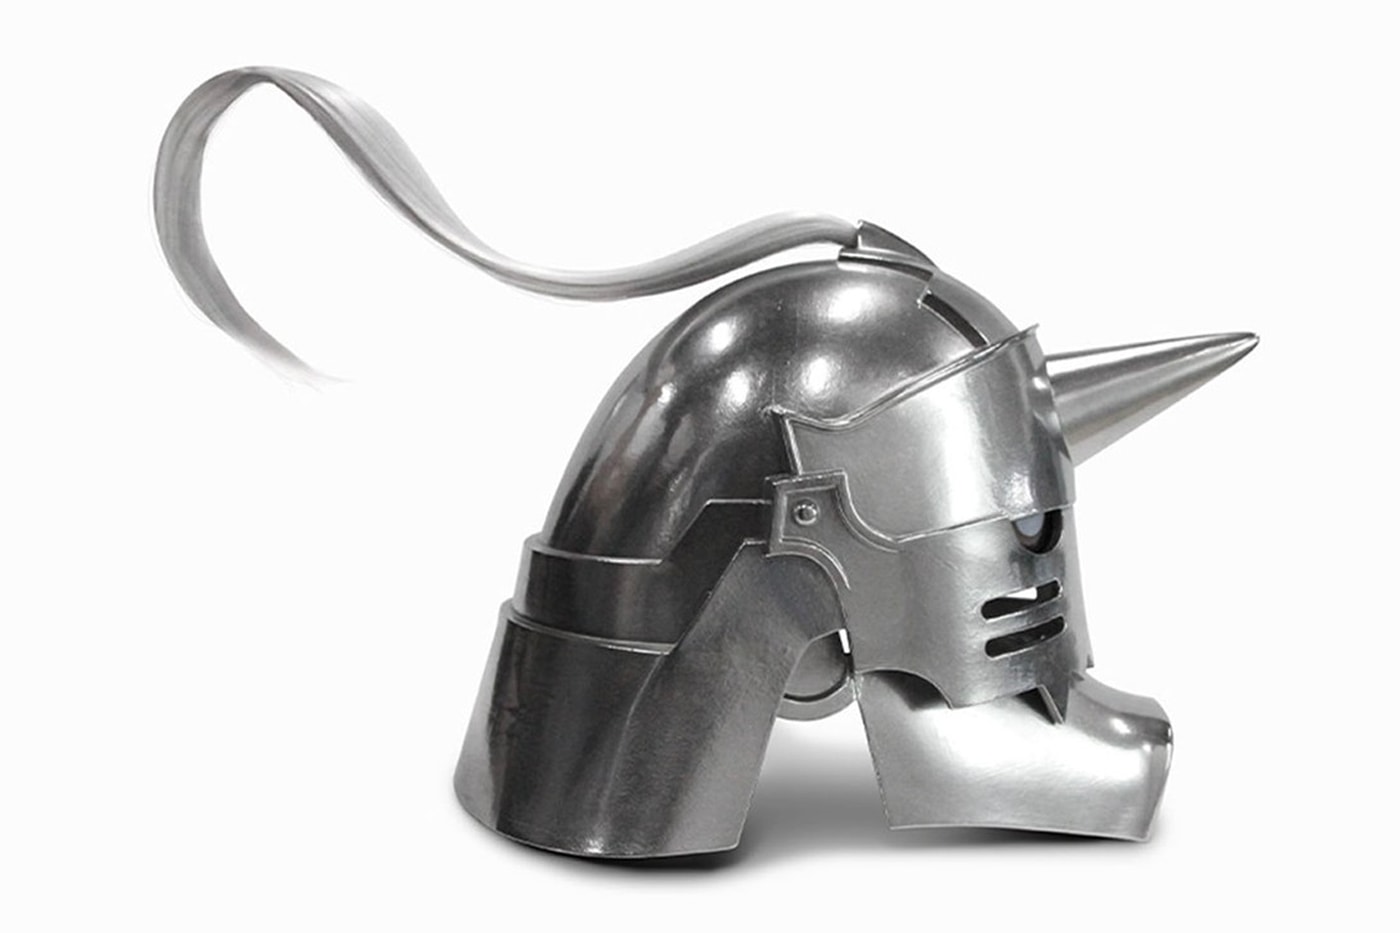 '강철의 연금술사' 알폰스 엘릭의 헬멧이 실제 사이즈로 출시된다, 아이언 팩토리, 금속, 메탈